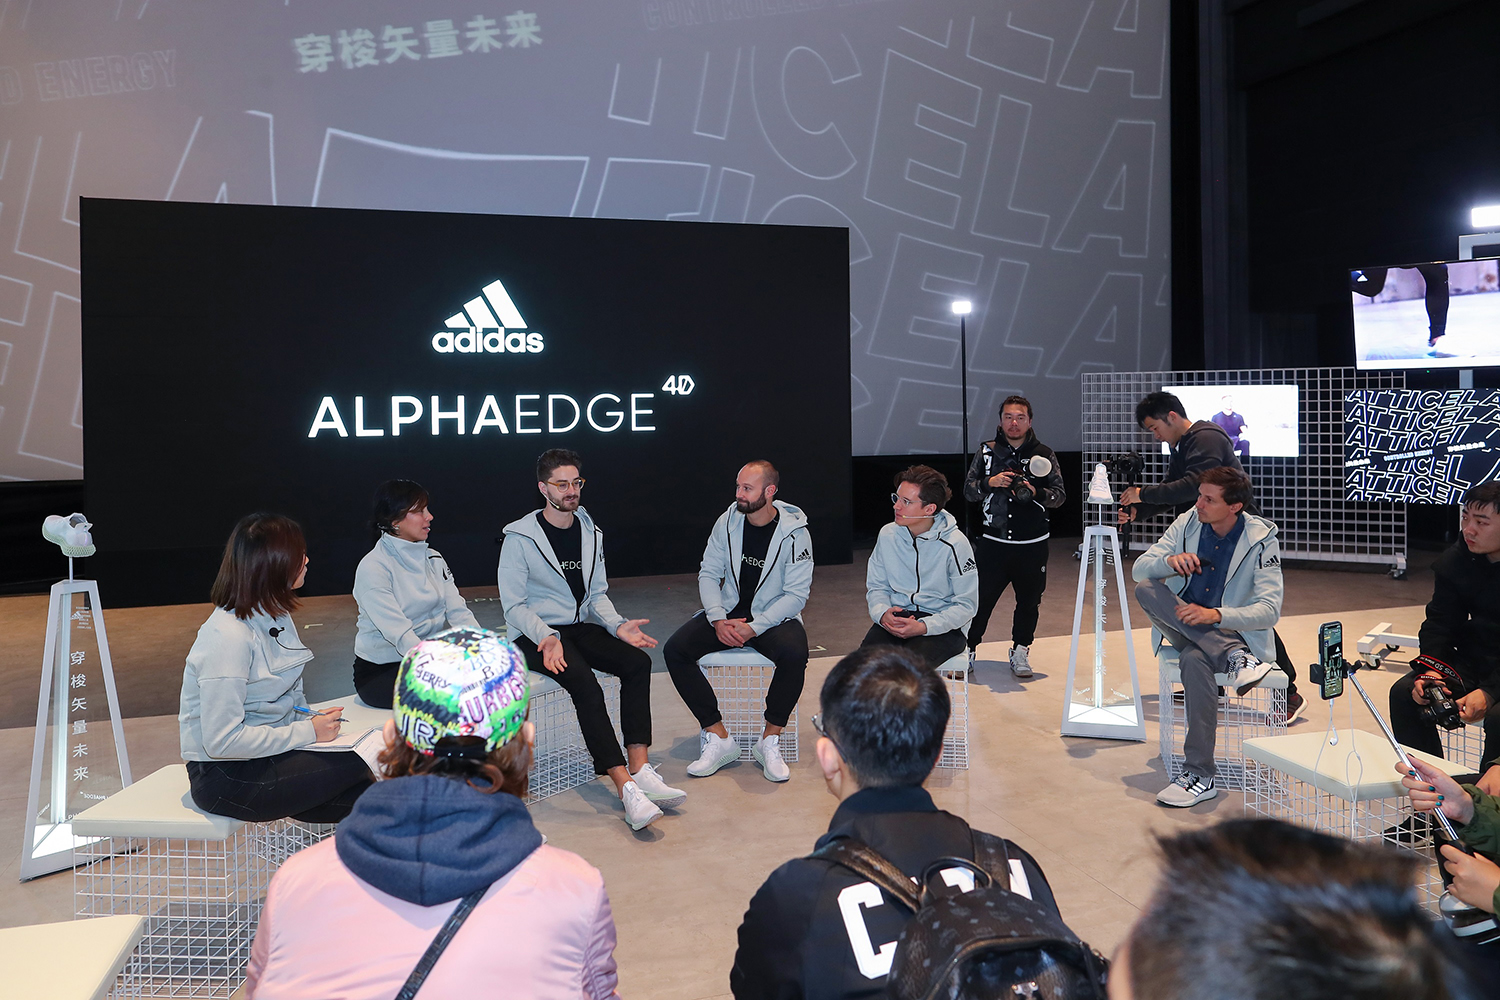 穿梭矢量未来——阿迪达斯于上海举办新款alphaedge 4d跑鞋发布会